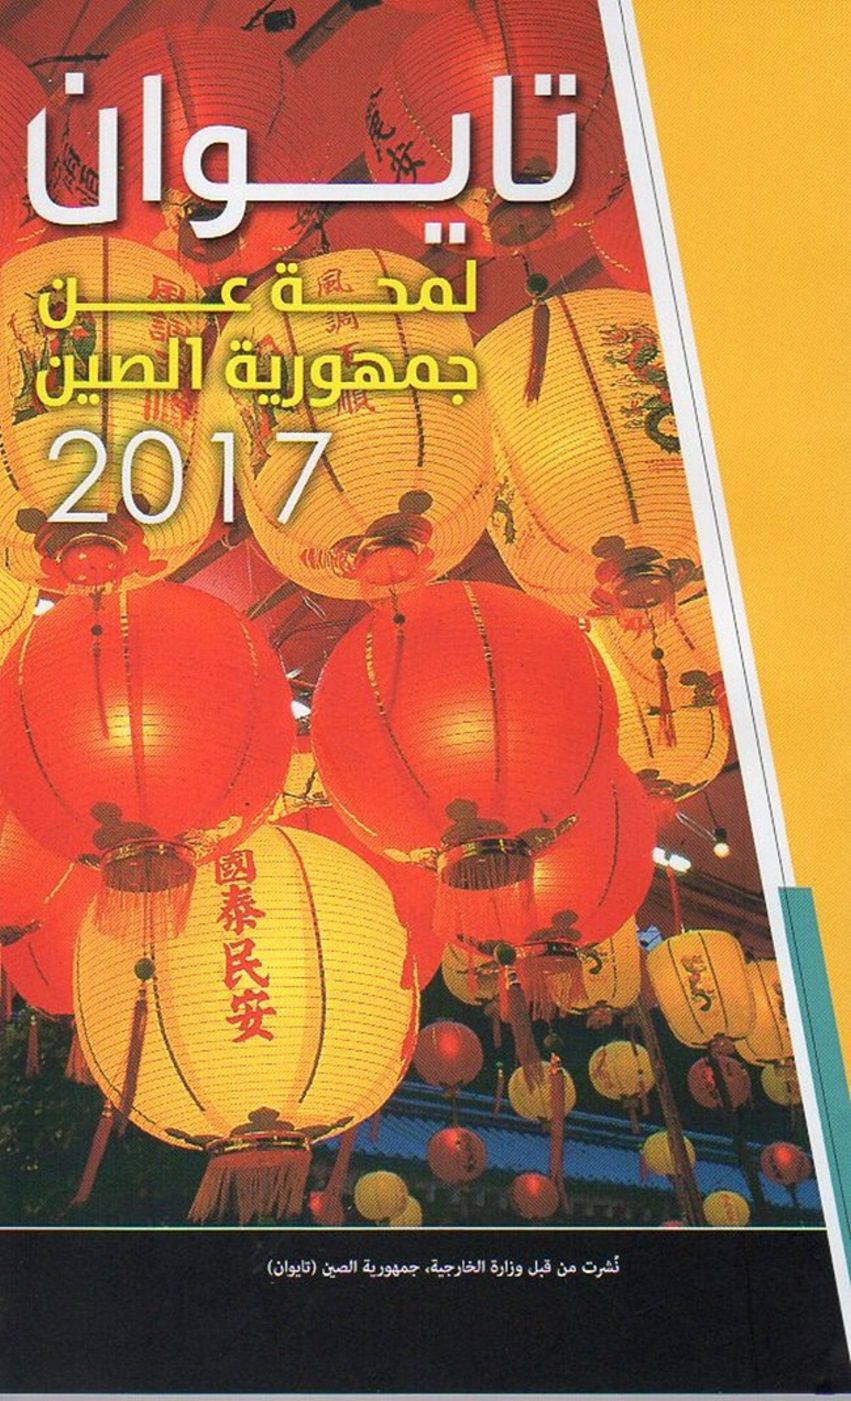 中華民國一瞥2017阿拉伯文